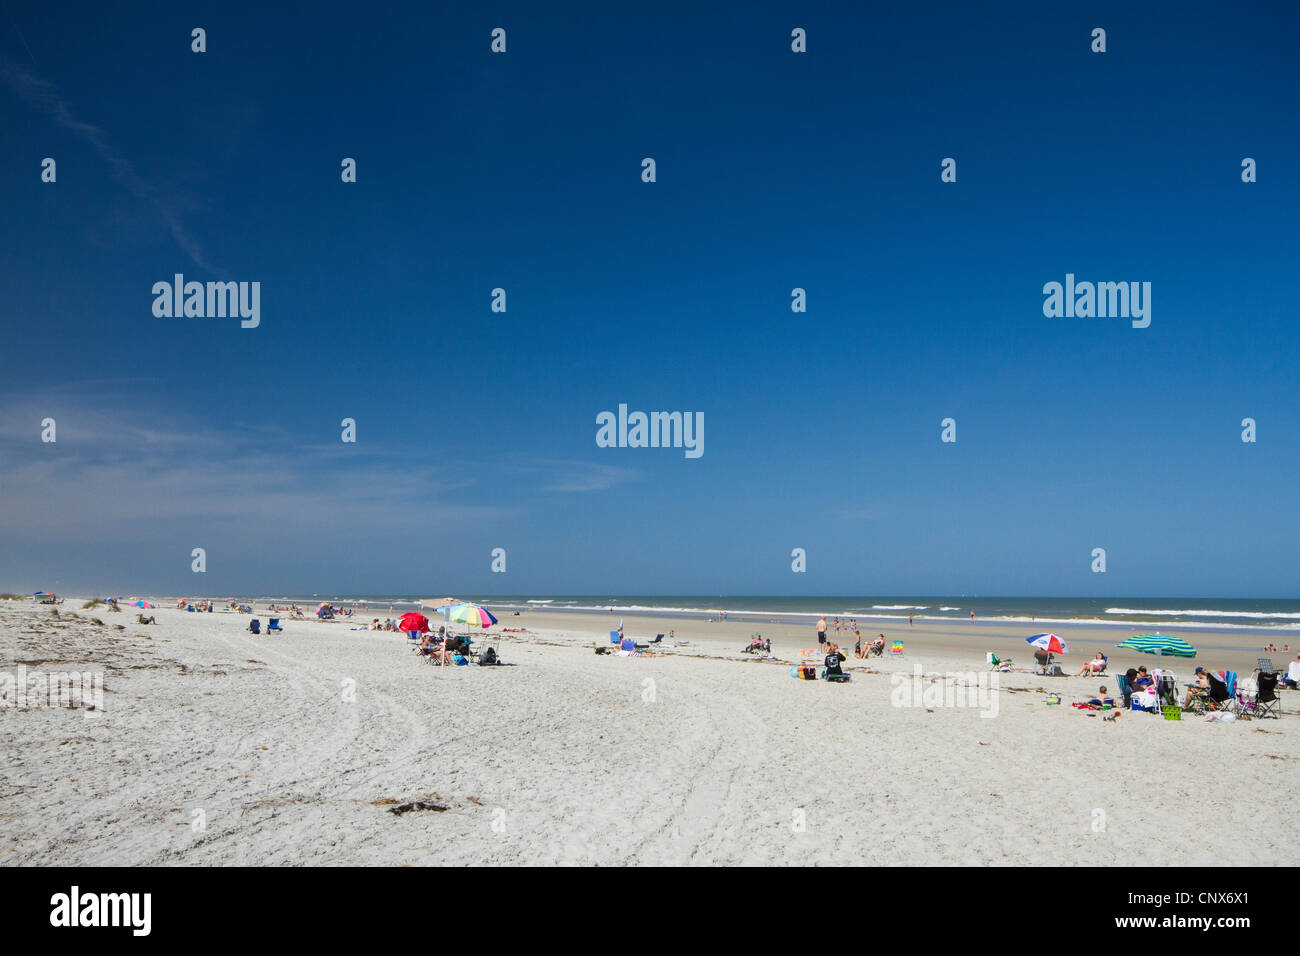 Les personnes bénéficiant d'une journée ensoleillée sur la plage à Anastasia State Park - Saint Augustin - Floride Banque D'Images